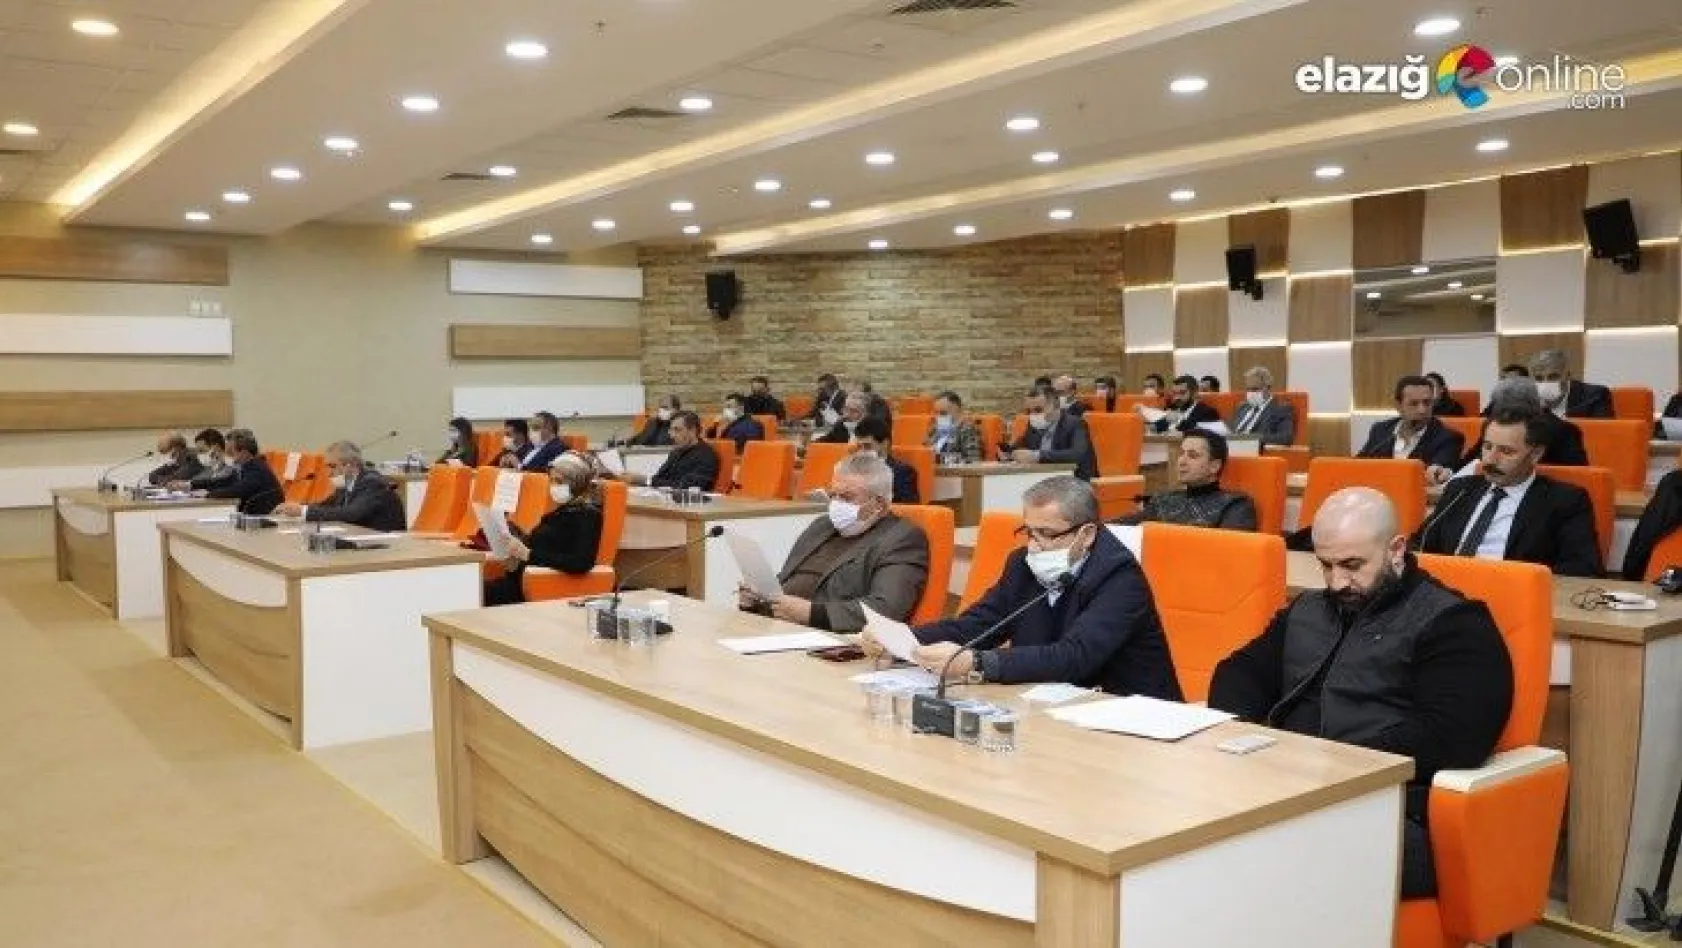 Elazığ Belediye Meclisi Ocak ayı toplantıları sürüyor